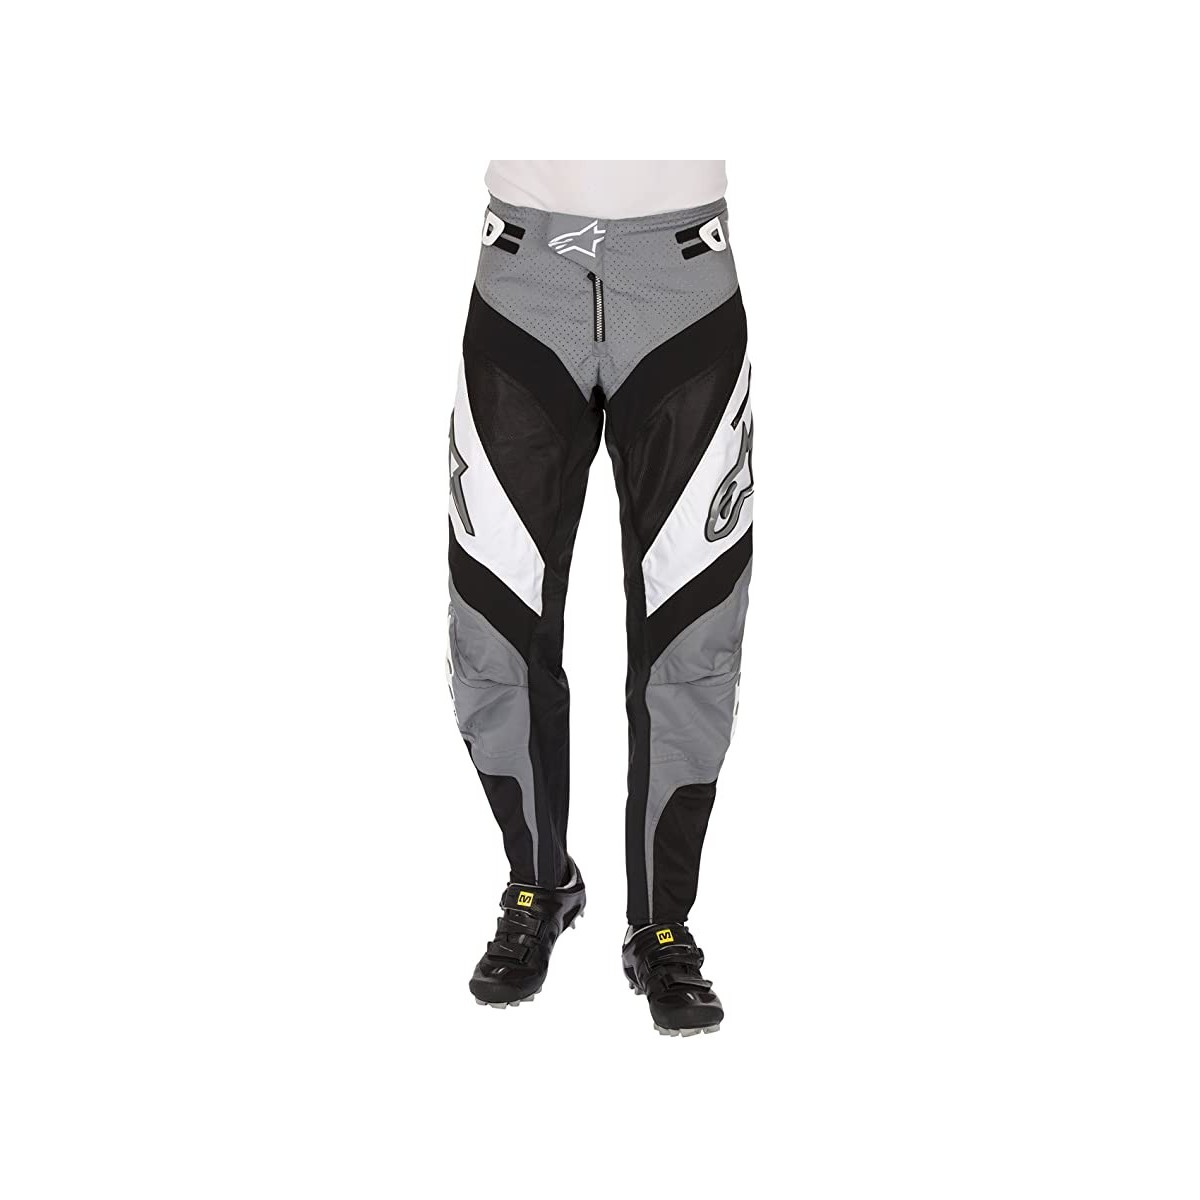 ALPINESTARS bmx pants A-LINE PANTS grey/black